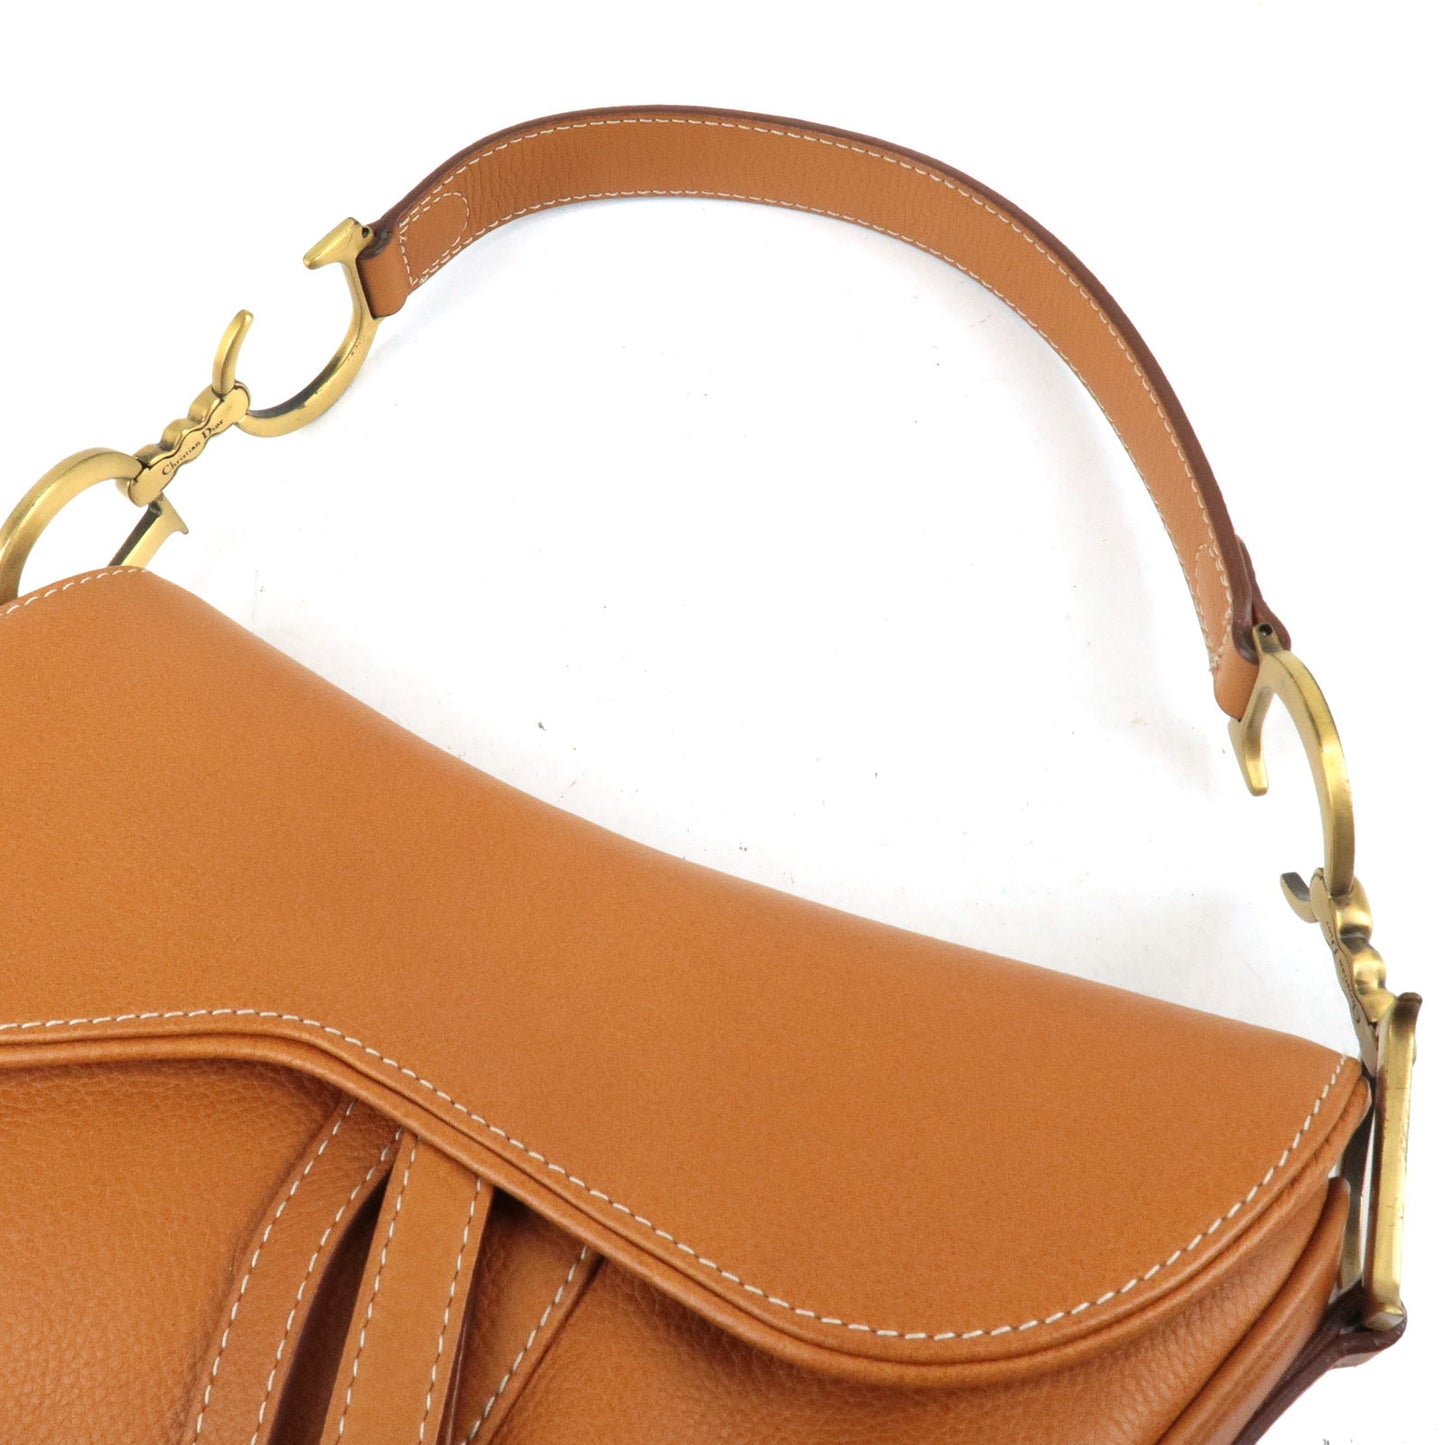 Christian Dior Saddle Bag Leather Shoulder Bag Light Brown